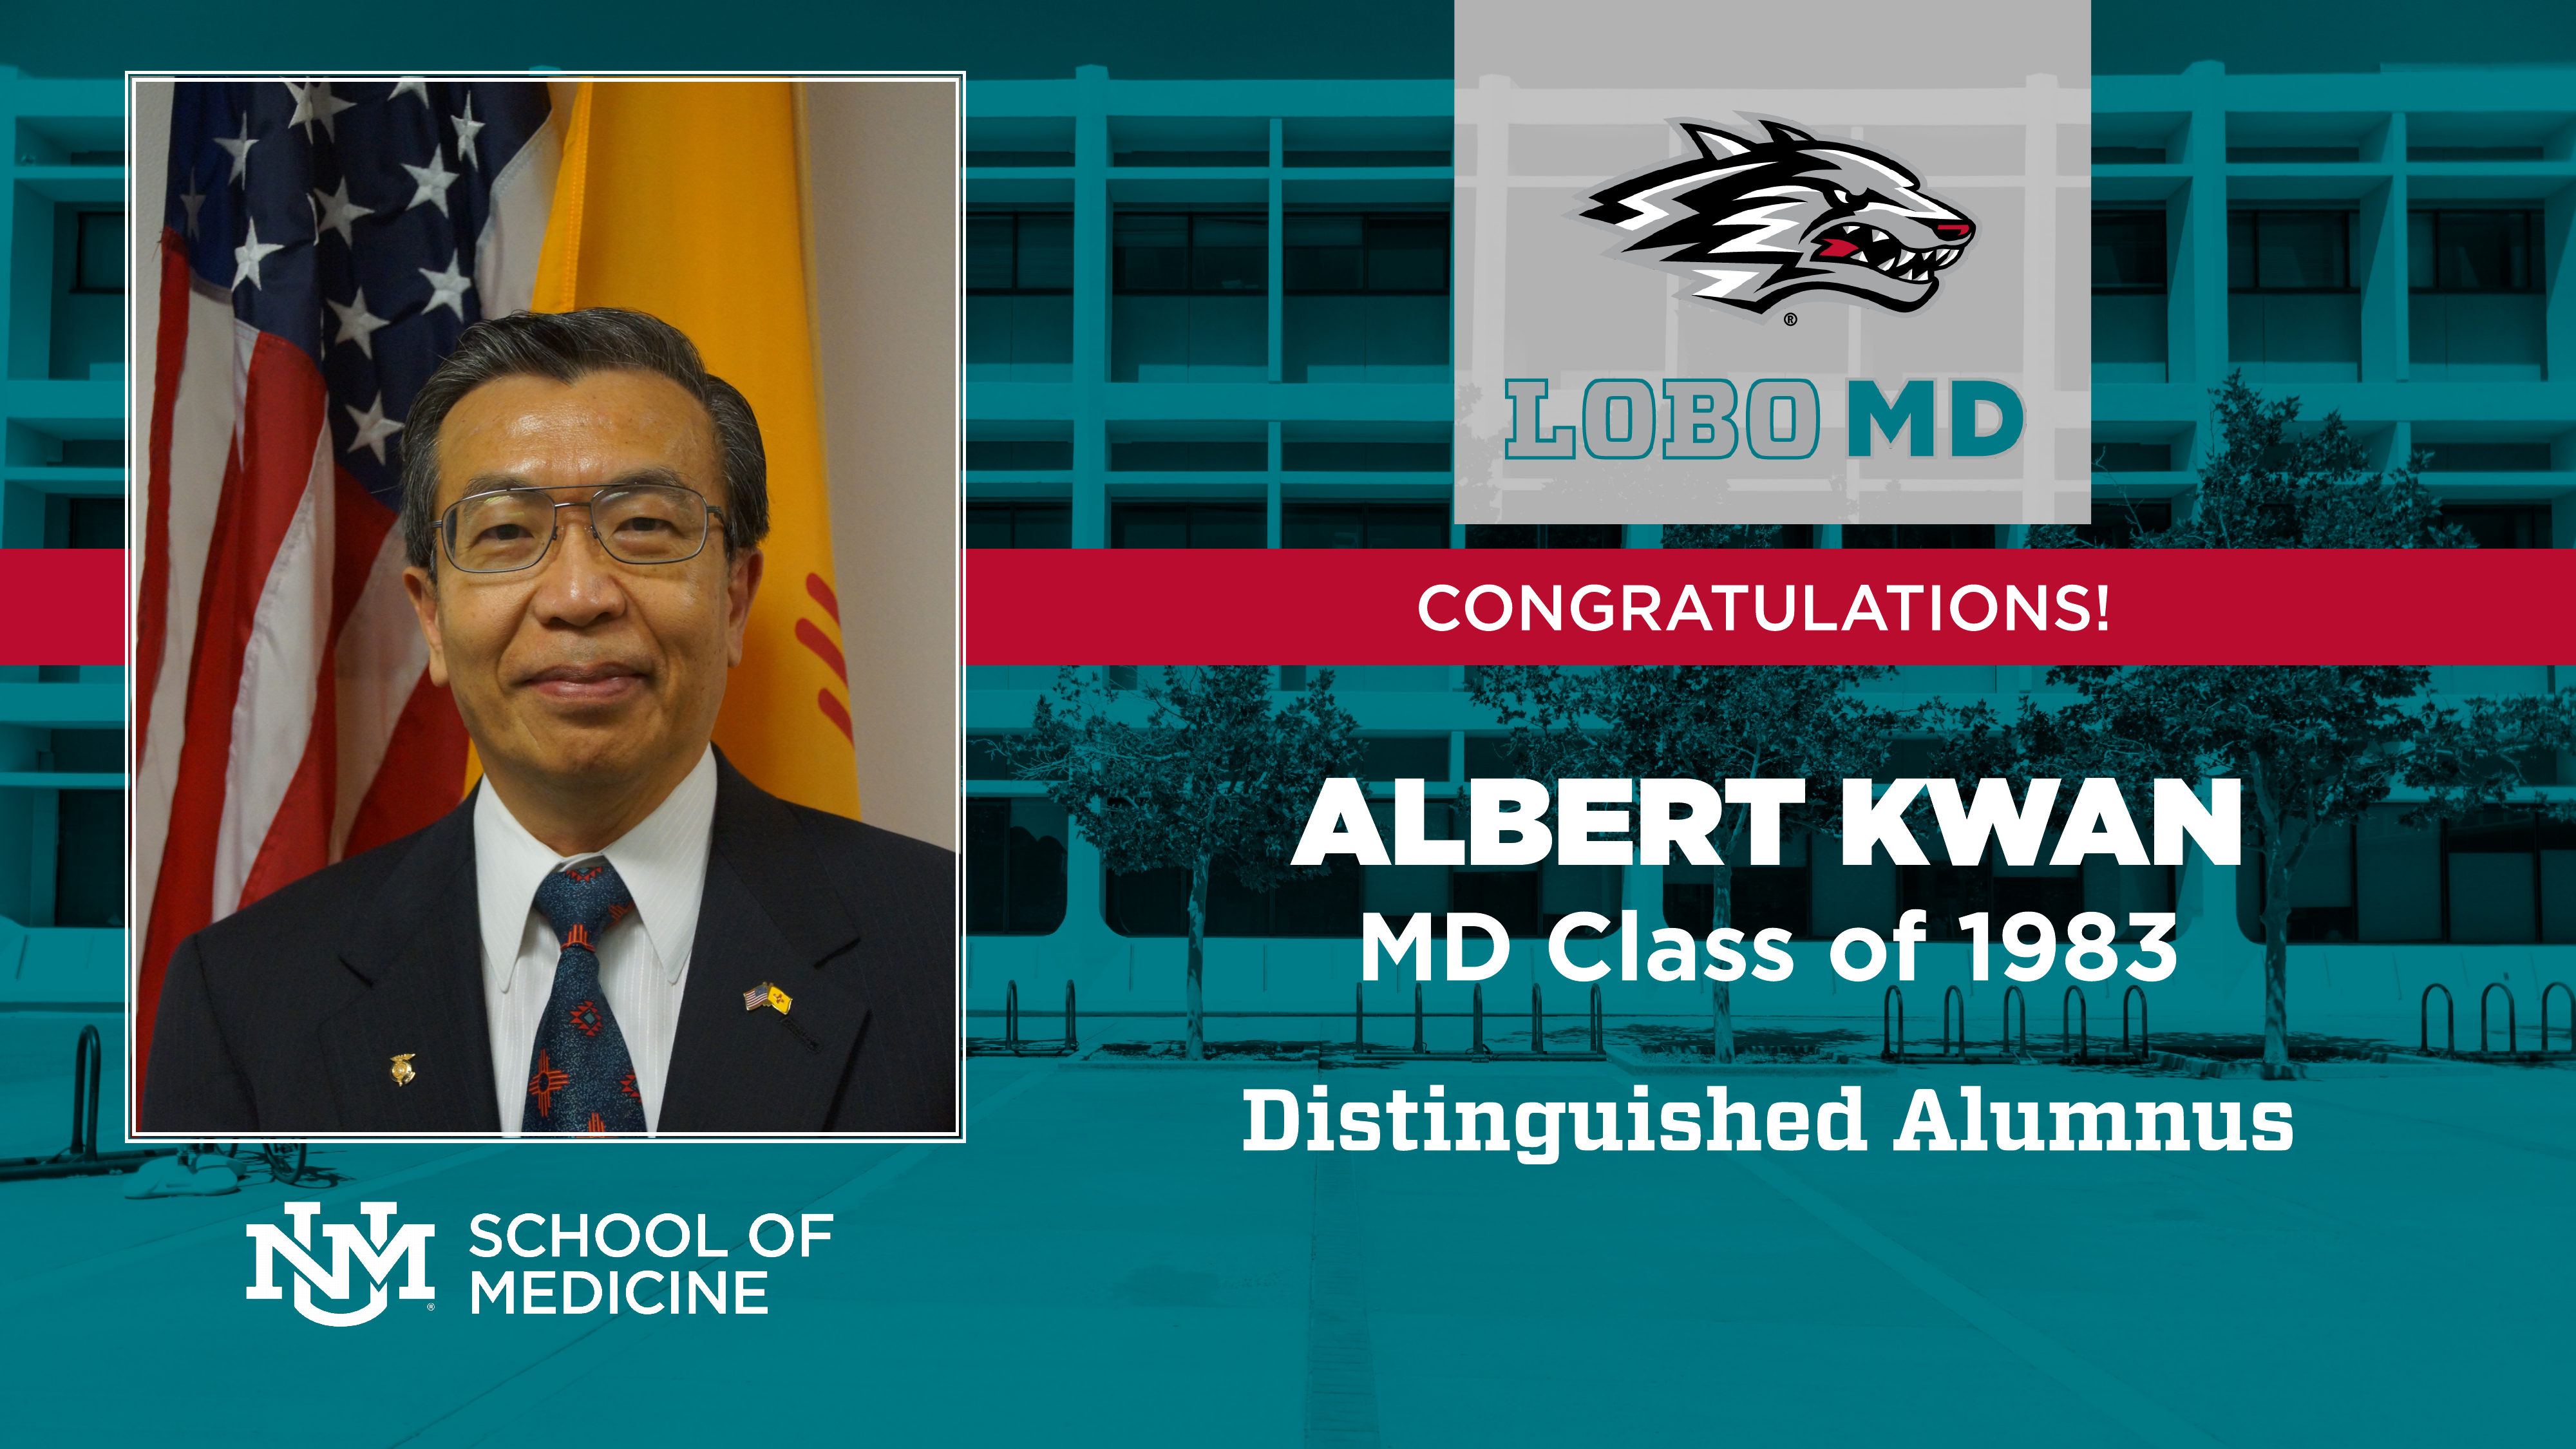 Dr. Albert Kwan